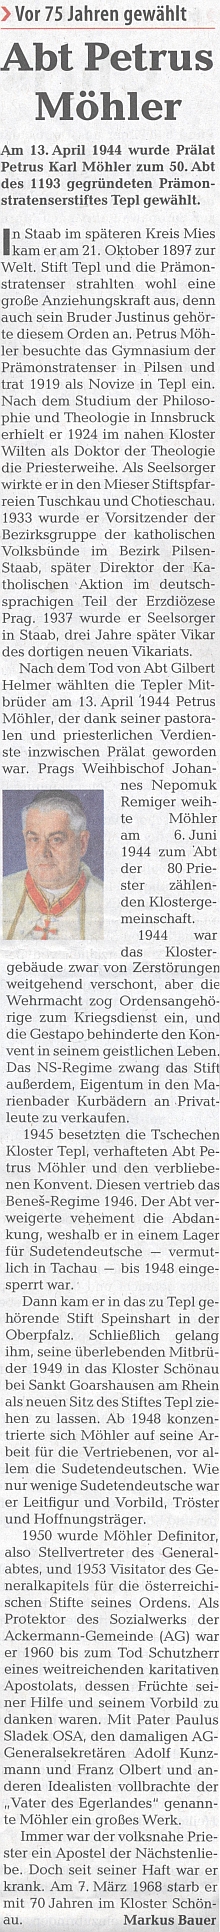 Vzpomínka ústředniho krajanského listu na Möhlerovo zvolení 50. opatem tepelského kláštera v roce 1944